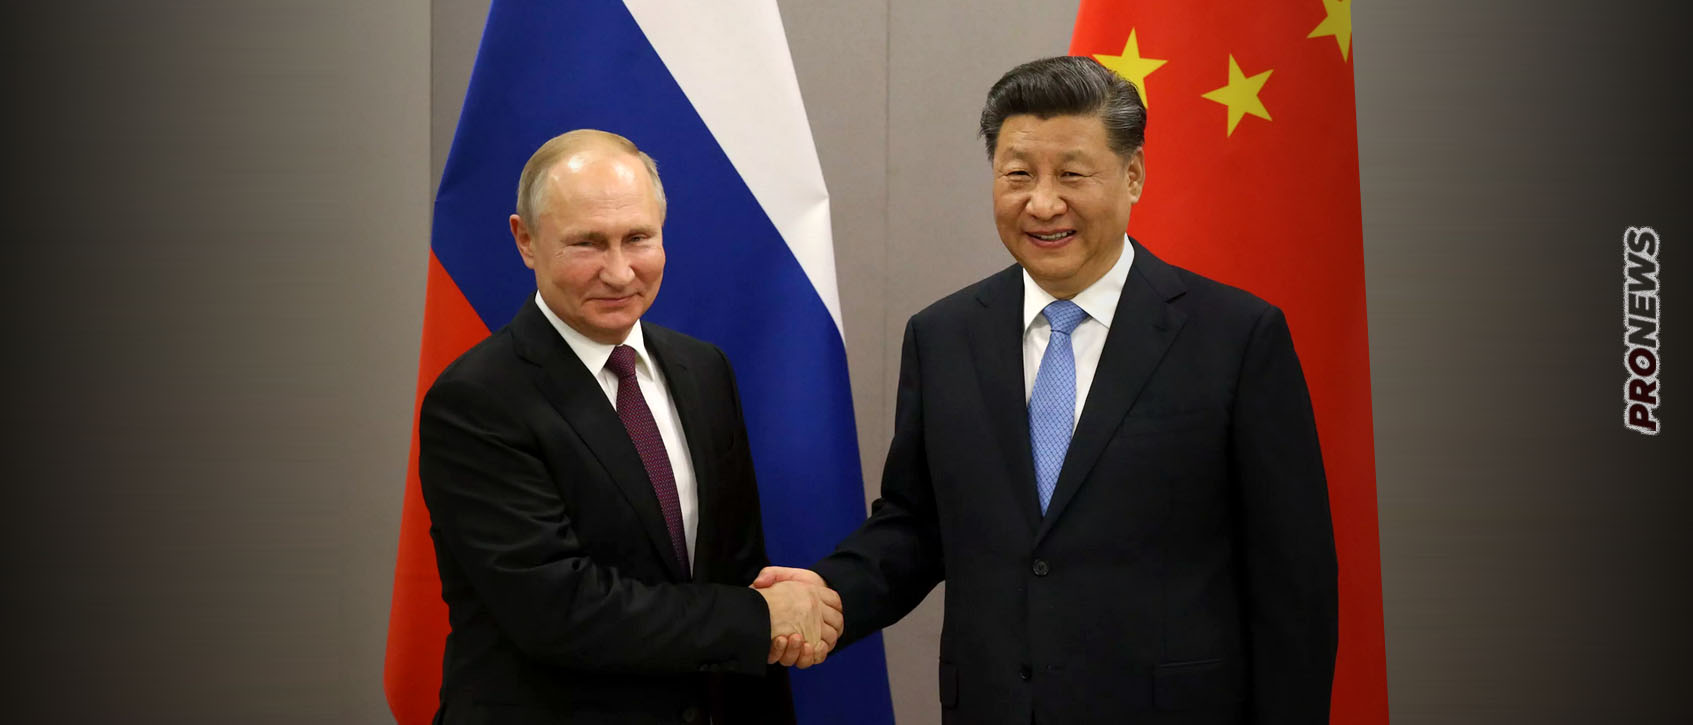 Ο Β.Πούτιν θωρακίζει το κοινό μέτωπο με την Κίνα: «Επιτυχείς και πολλές οι συμφωνίες μας»